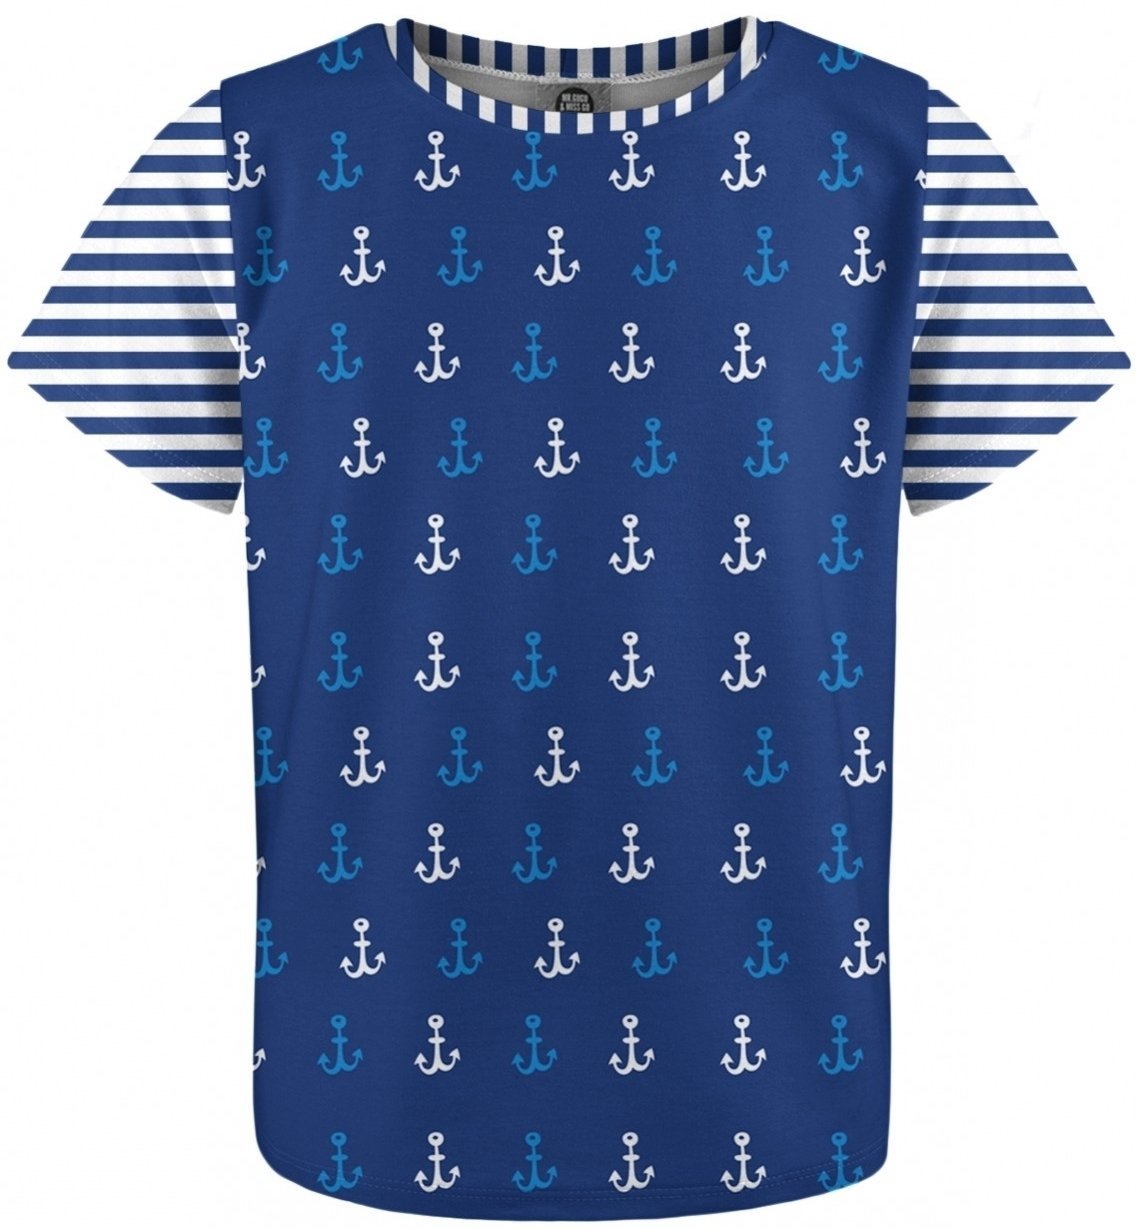 Odzież żeglarska dla dzieci Mr. Gugu and Miss Go Ocean Pattern Kids T-Shirt Fullprint 10 - 12 lat